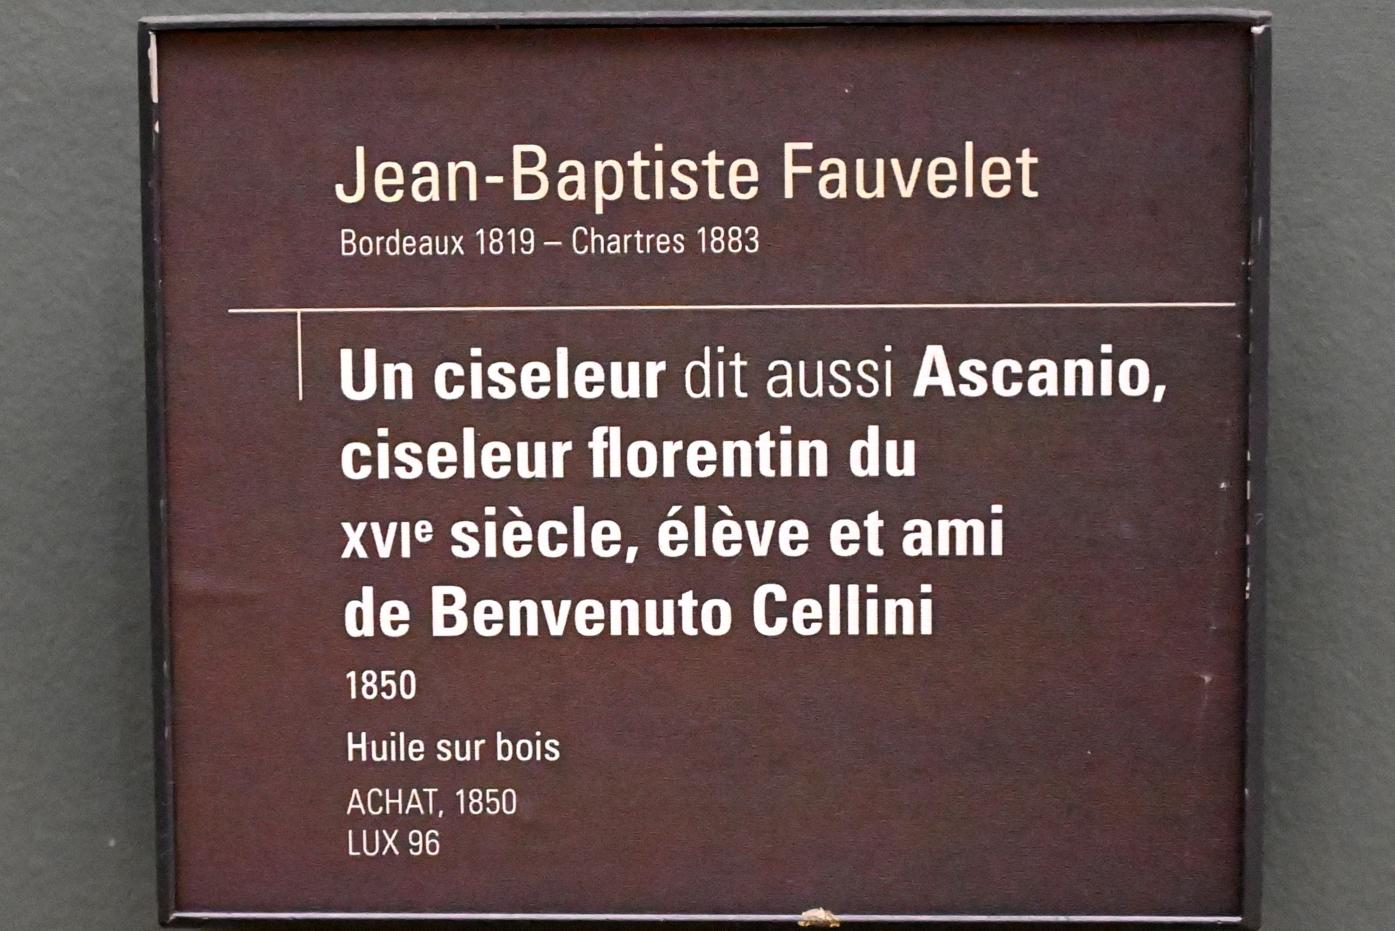 Jean Baptiste Fauvelet (1850), Graveur (Ascanio, ein Florentinischer Graveur des 16. Jahrhunderts, Schüler und Freund von Benvenuto Cellini), Paris, Musée d’Orsay, 1850, Bild 2/2